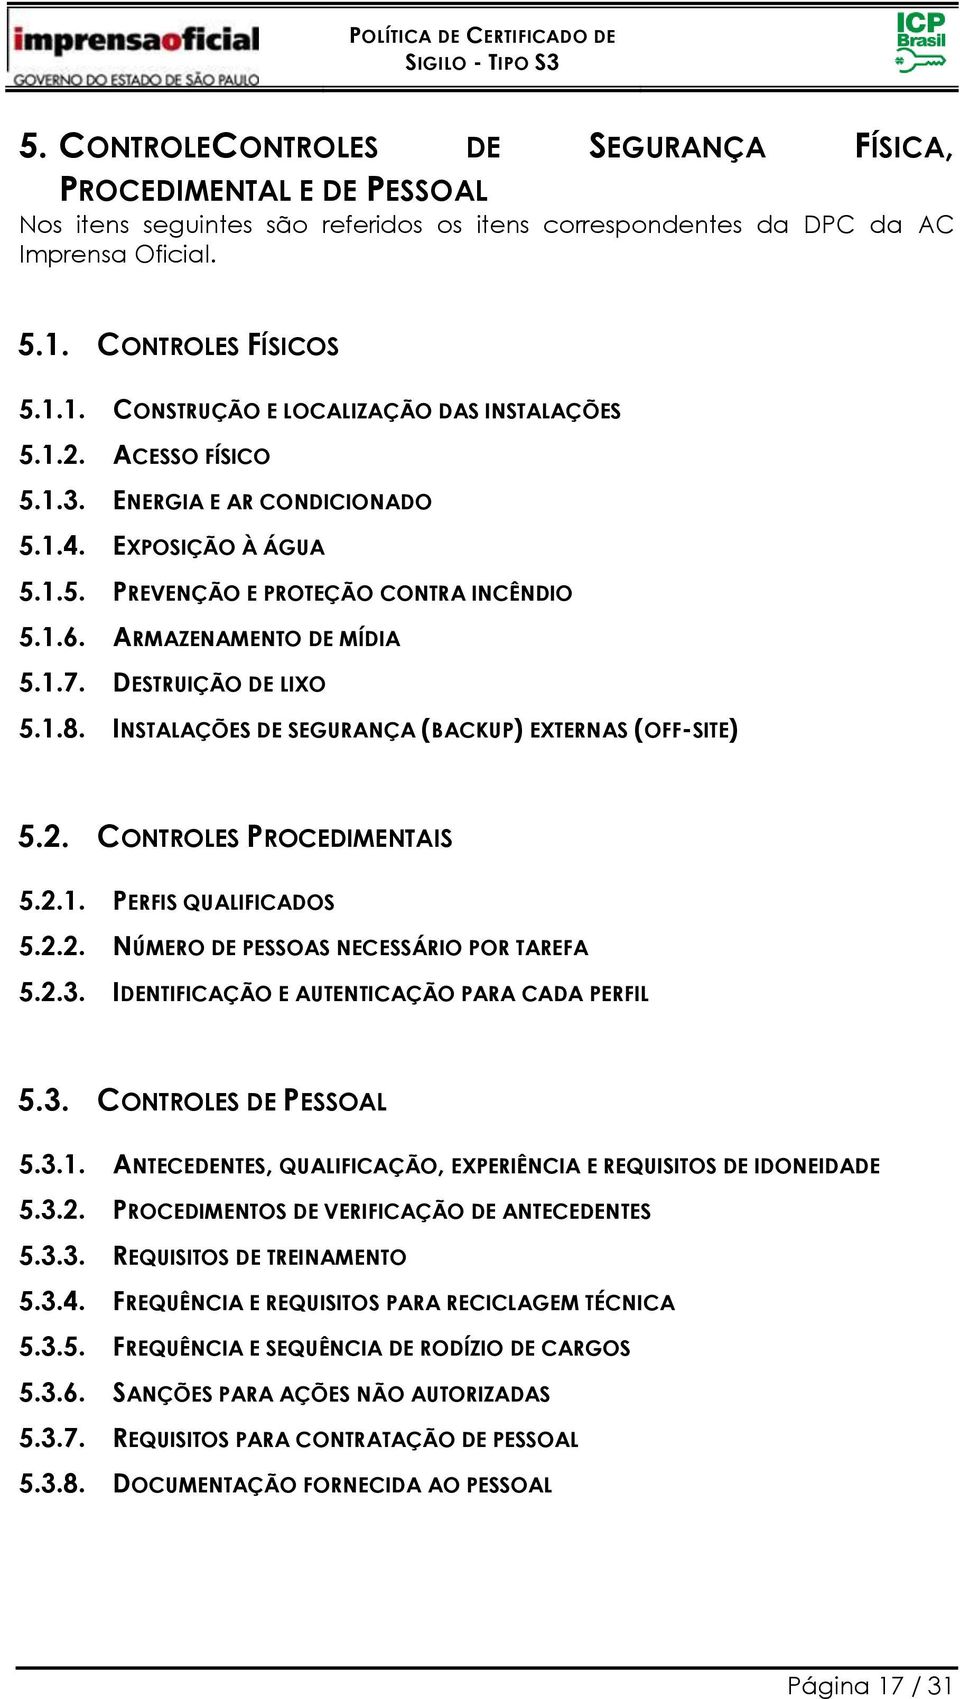 ARMAZENAMENTO DE MÍDIA 5.1.7. DESTRUIÇÃO DE LIXO 5.1.8. INSTALAÇÕES DE SEGURANÇA (BACKUP) EXTERNAS (OFF-SITE) 5.2. CONTROLES PROCEDIMENTAIS 5.2.1. PERFIS QUALIFICADOS 5.2.2. NÚMERO DE PESSOAS NECESSÁRIO POR TAREFA 5.